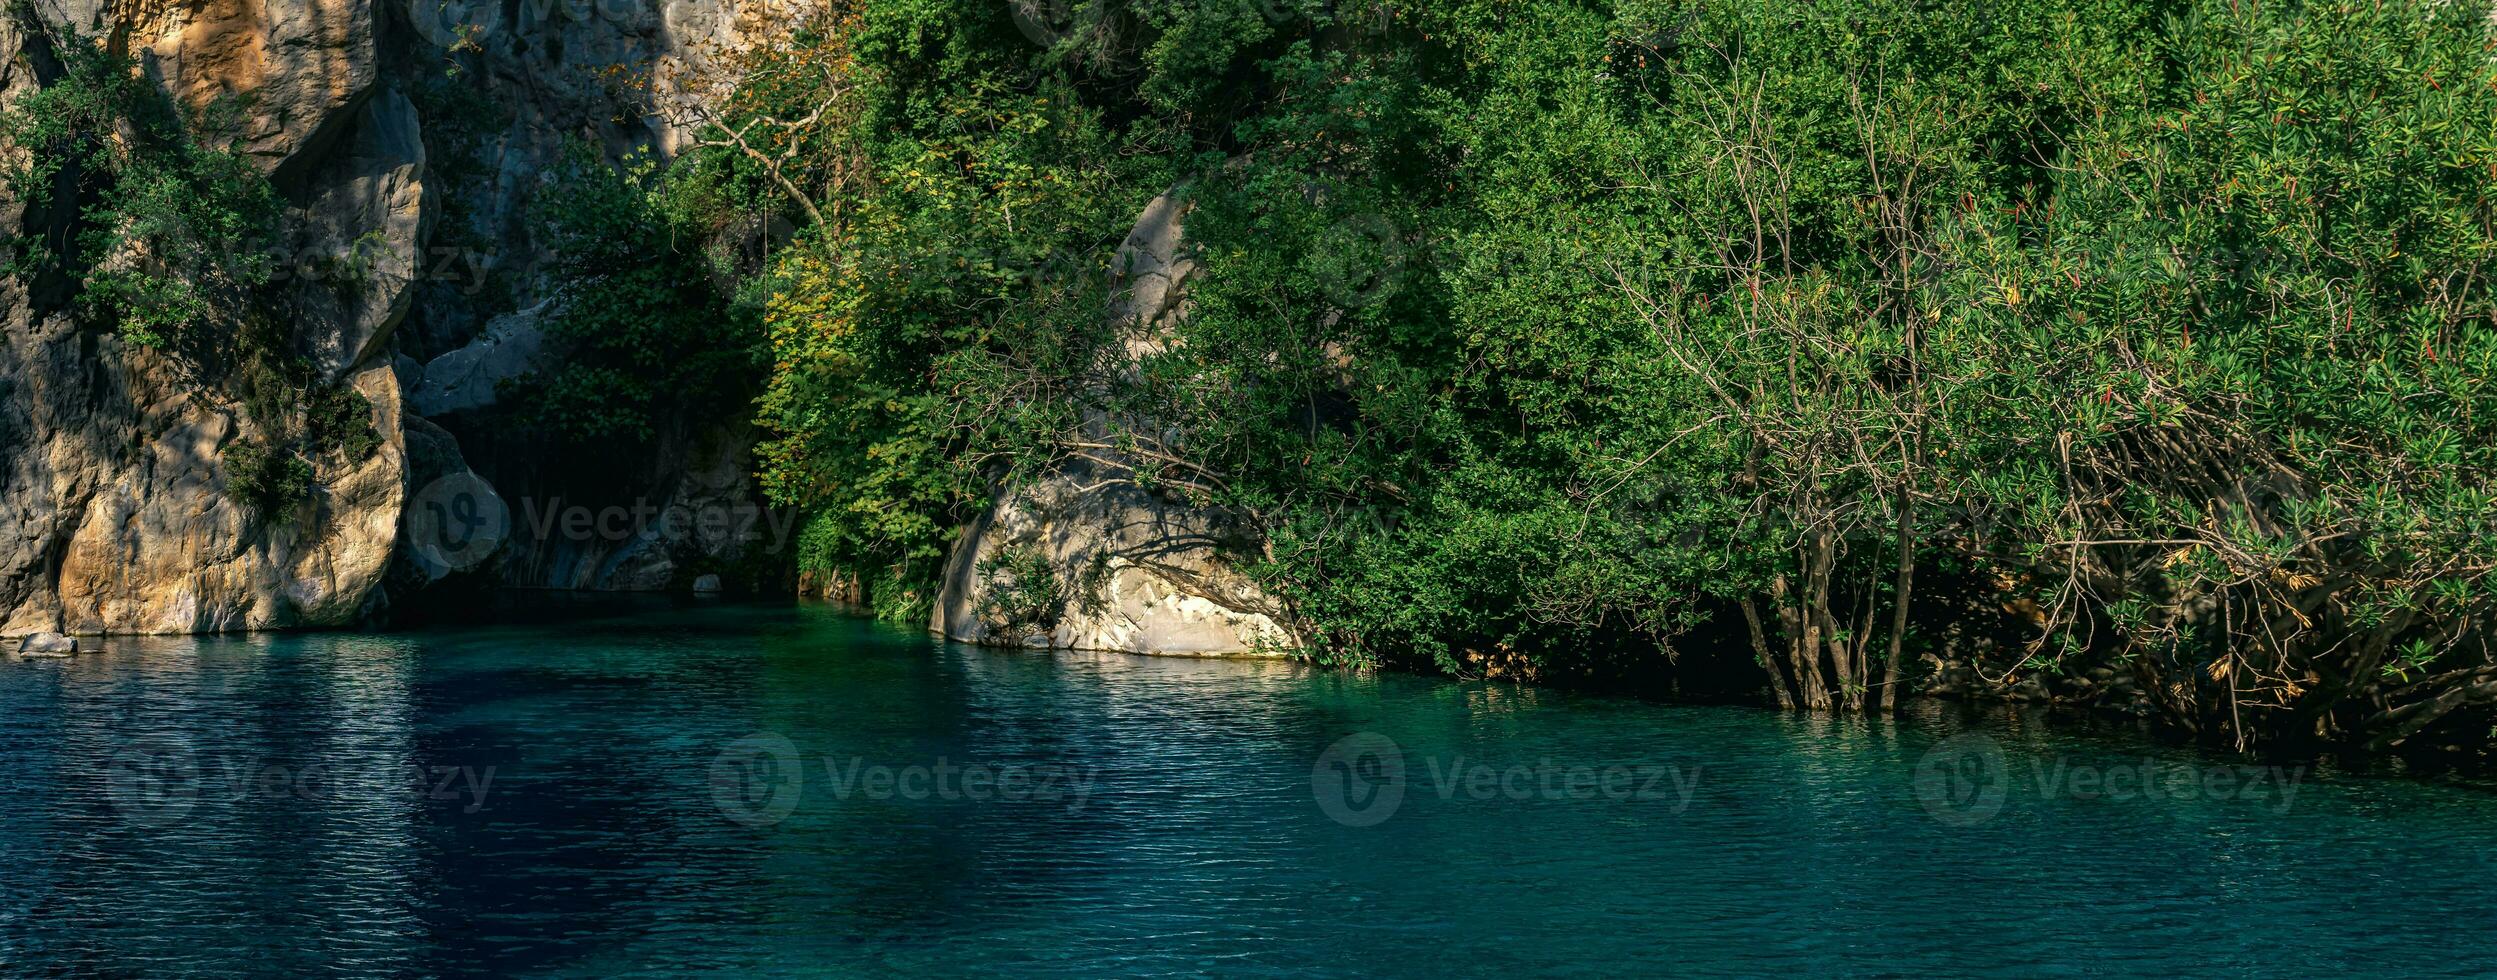 natürlich felsig Schlucht mit Blau Wasser im Goynuk, Truthahn foto